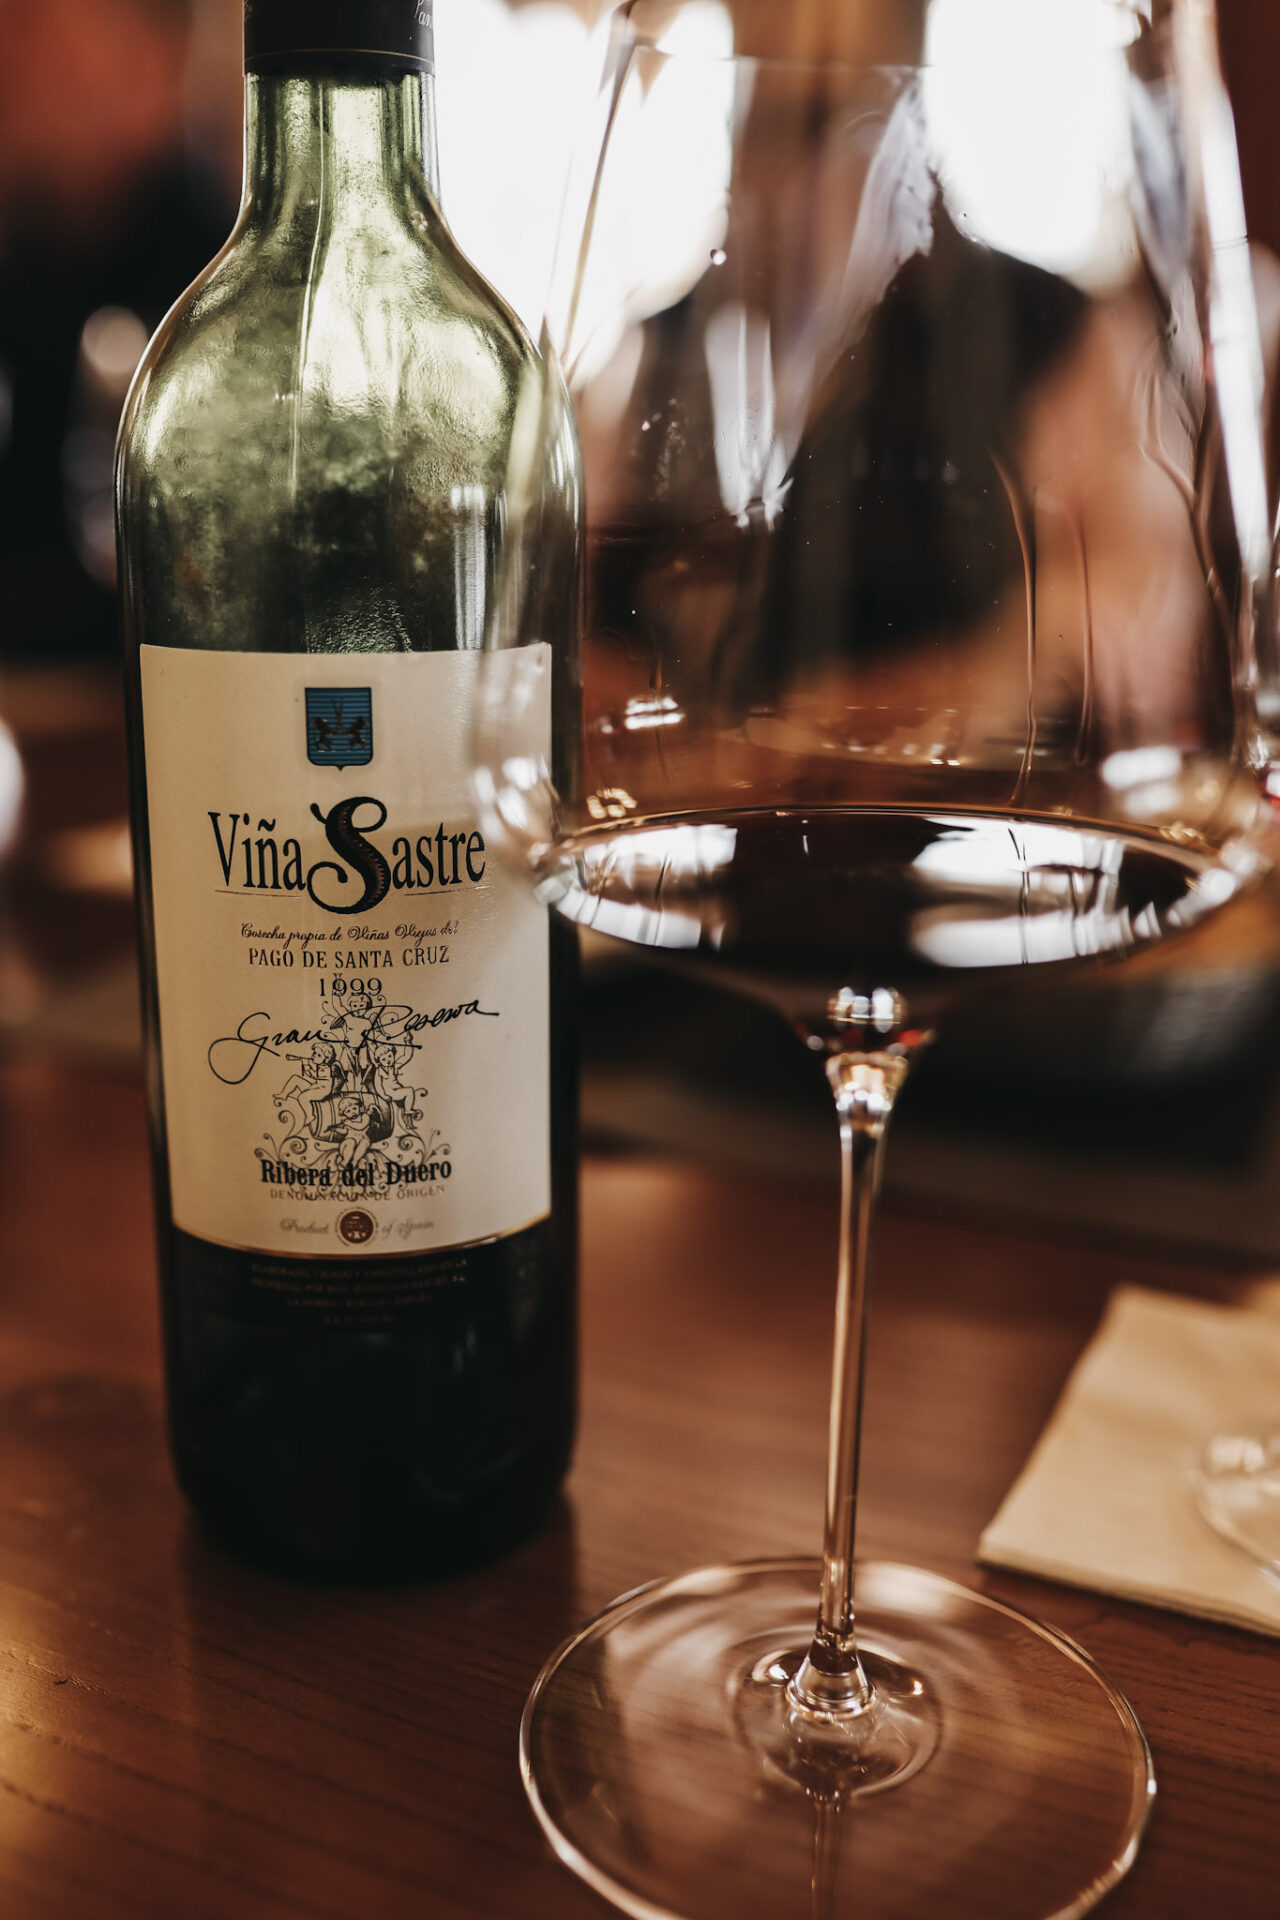 1999 Vina Sastre Ribera del Duero wine